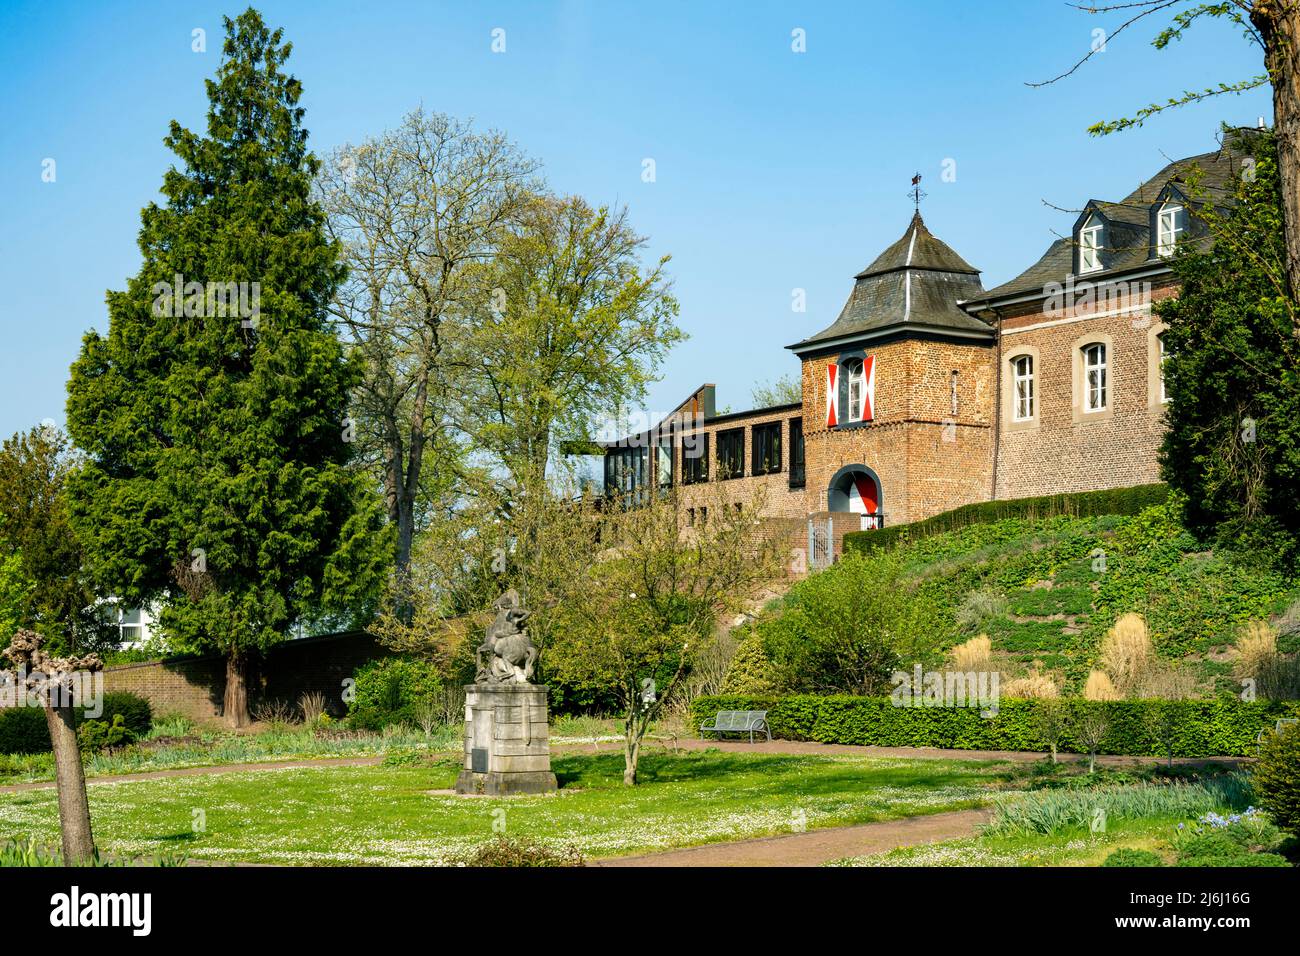 Deutschland, NRW, Kreis Heinsberg, Wassenberg, Burg, vorne Statue des heiligen Georg im Kampf mit dem Drachen Banque D'Images